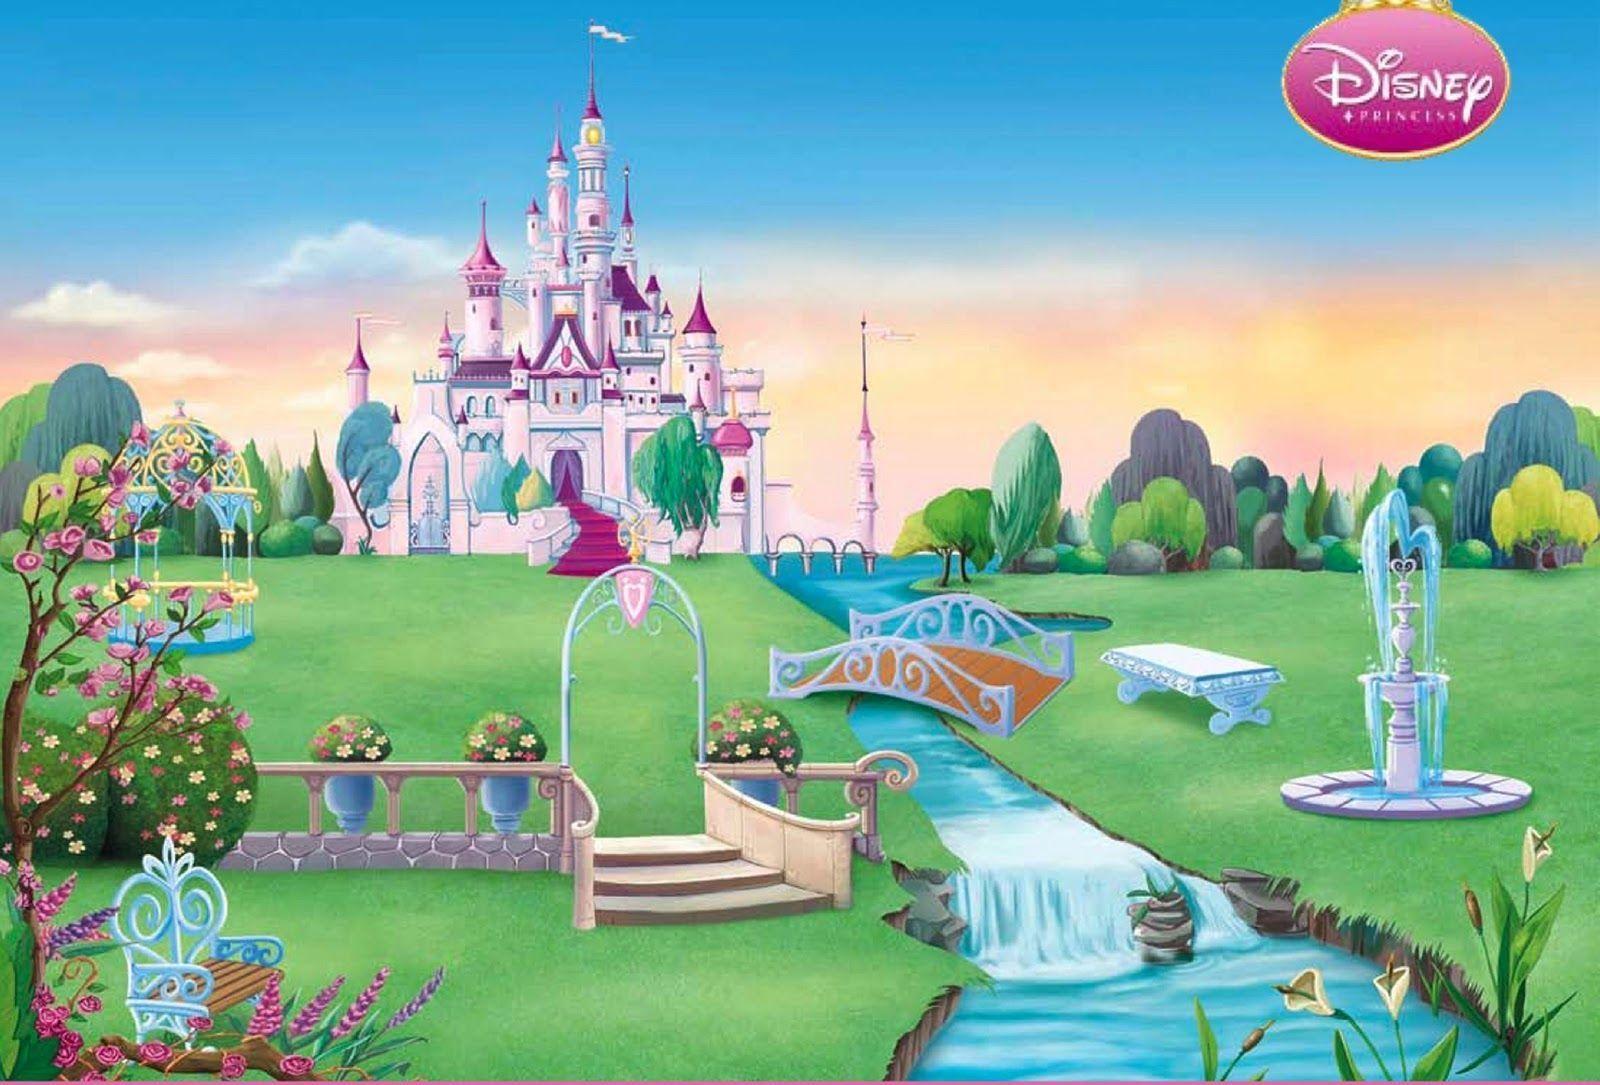 Disney castle 1080P, 2K, 4K, 5K HD wallpapers free download | Wallpaper  Flare